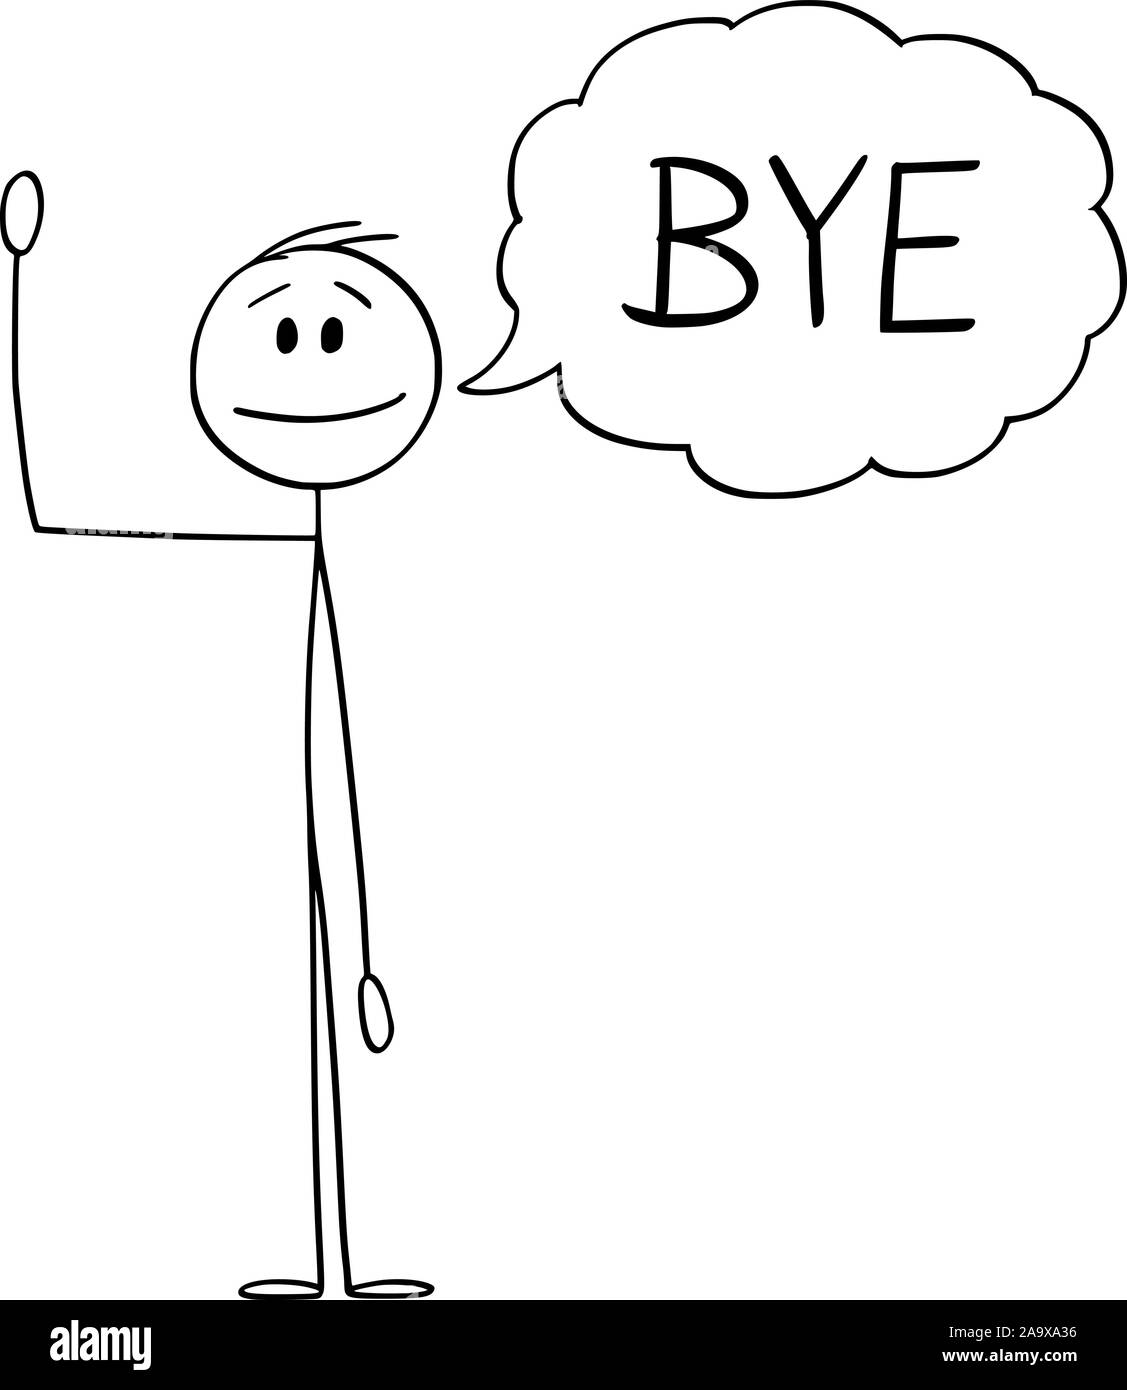 Vector cartoon stick figura disegno illustrazione concettuale dell'uomo o imprenditore agitando la mano e saluto con bolla di testo o discorso dicendo a palloncino bye. Illustrazione Vettoriale